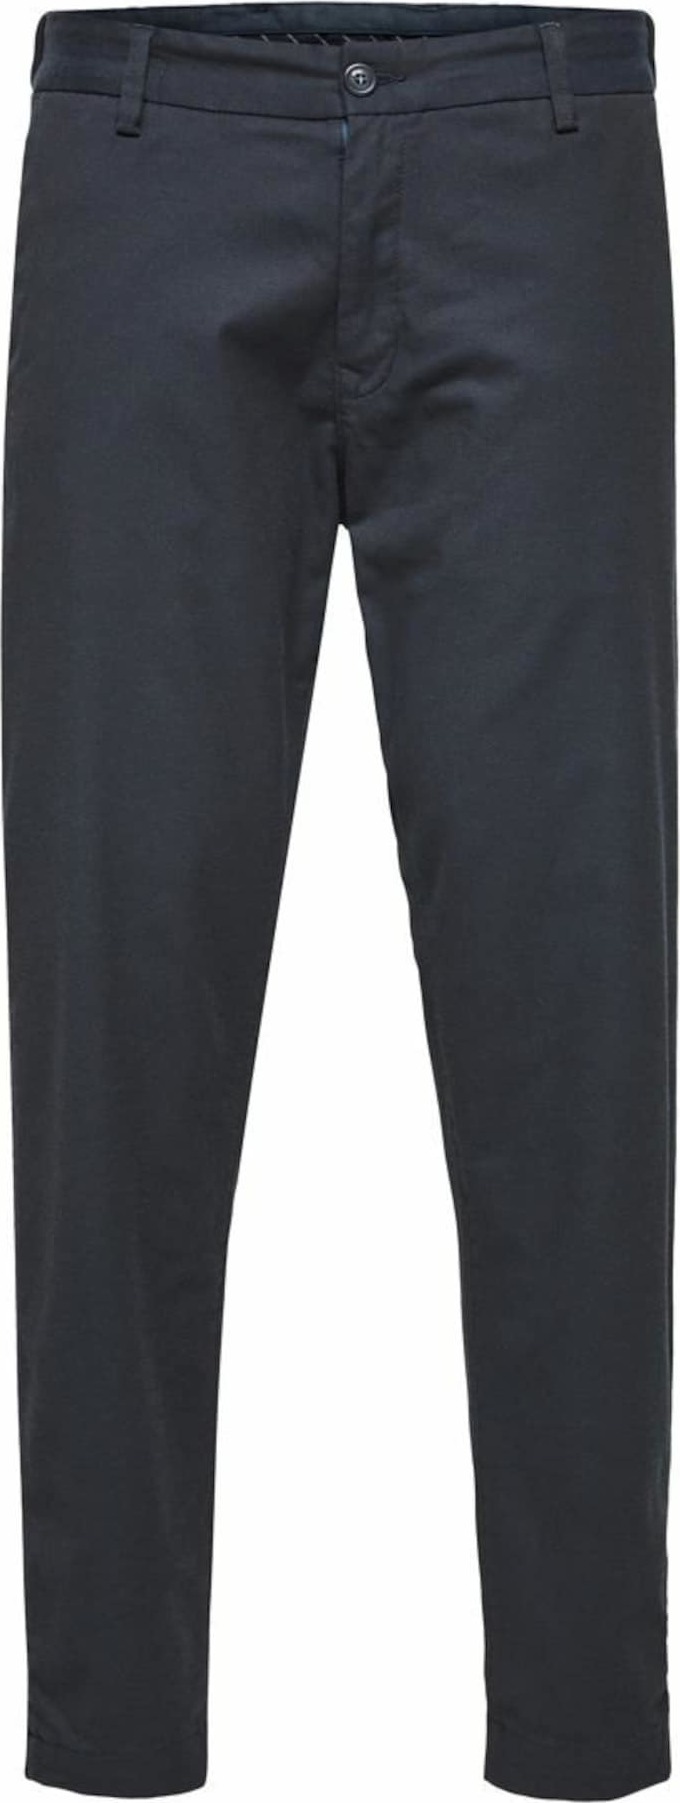 SELECTED HOMME Chino kalhoty 'York' tmavě modrá